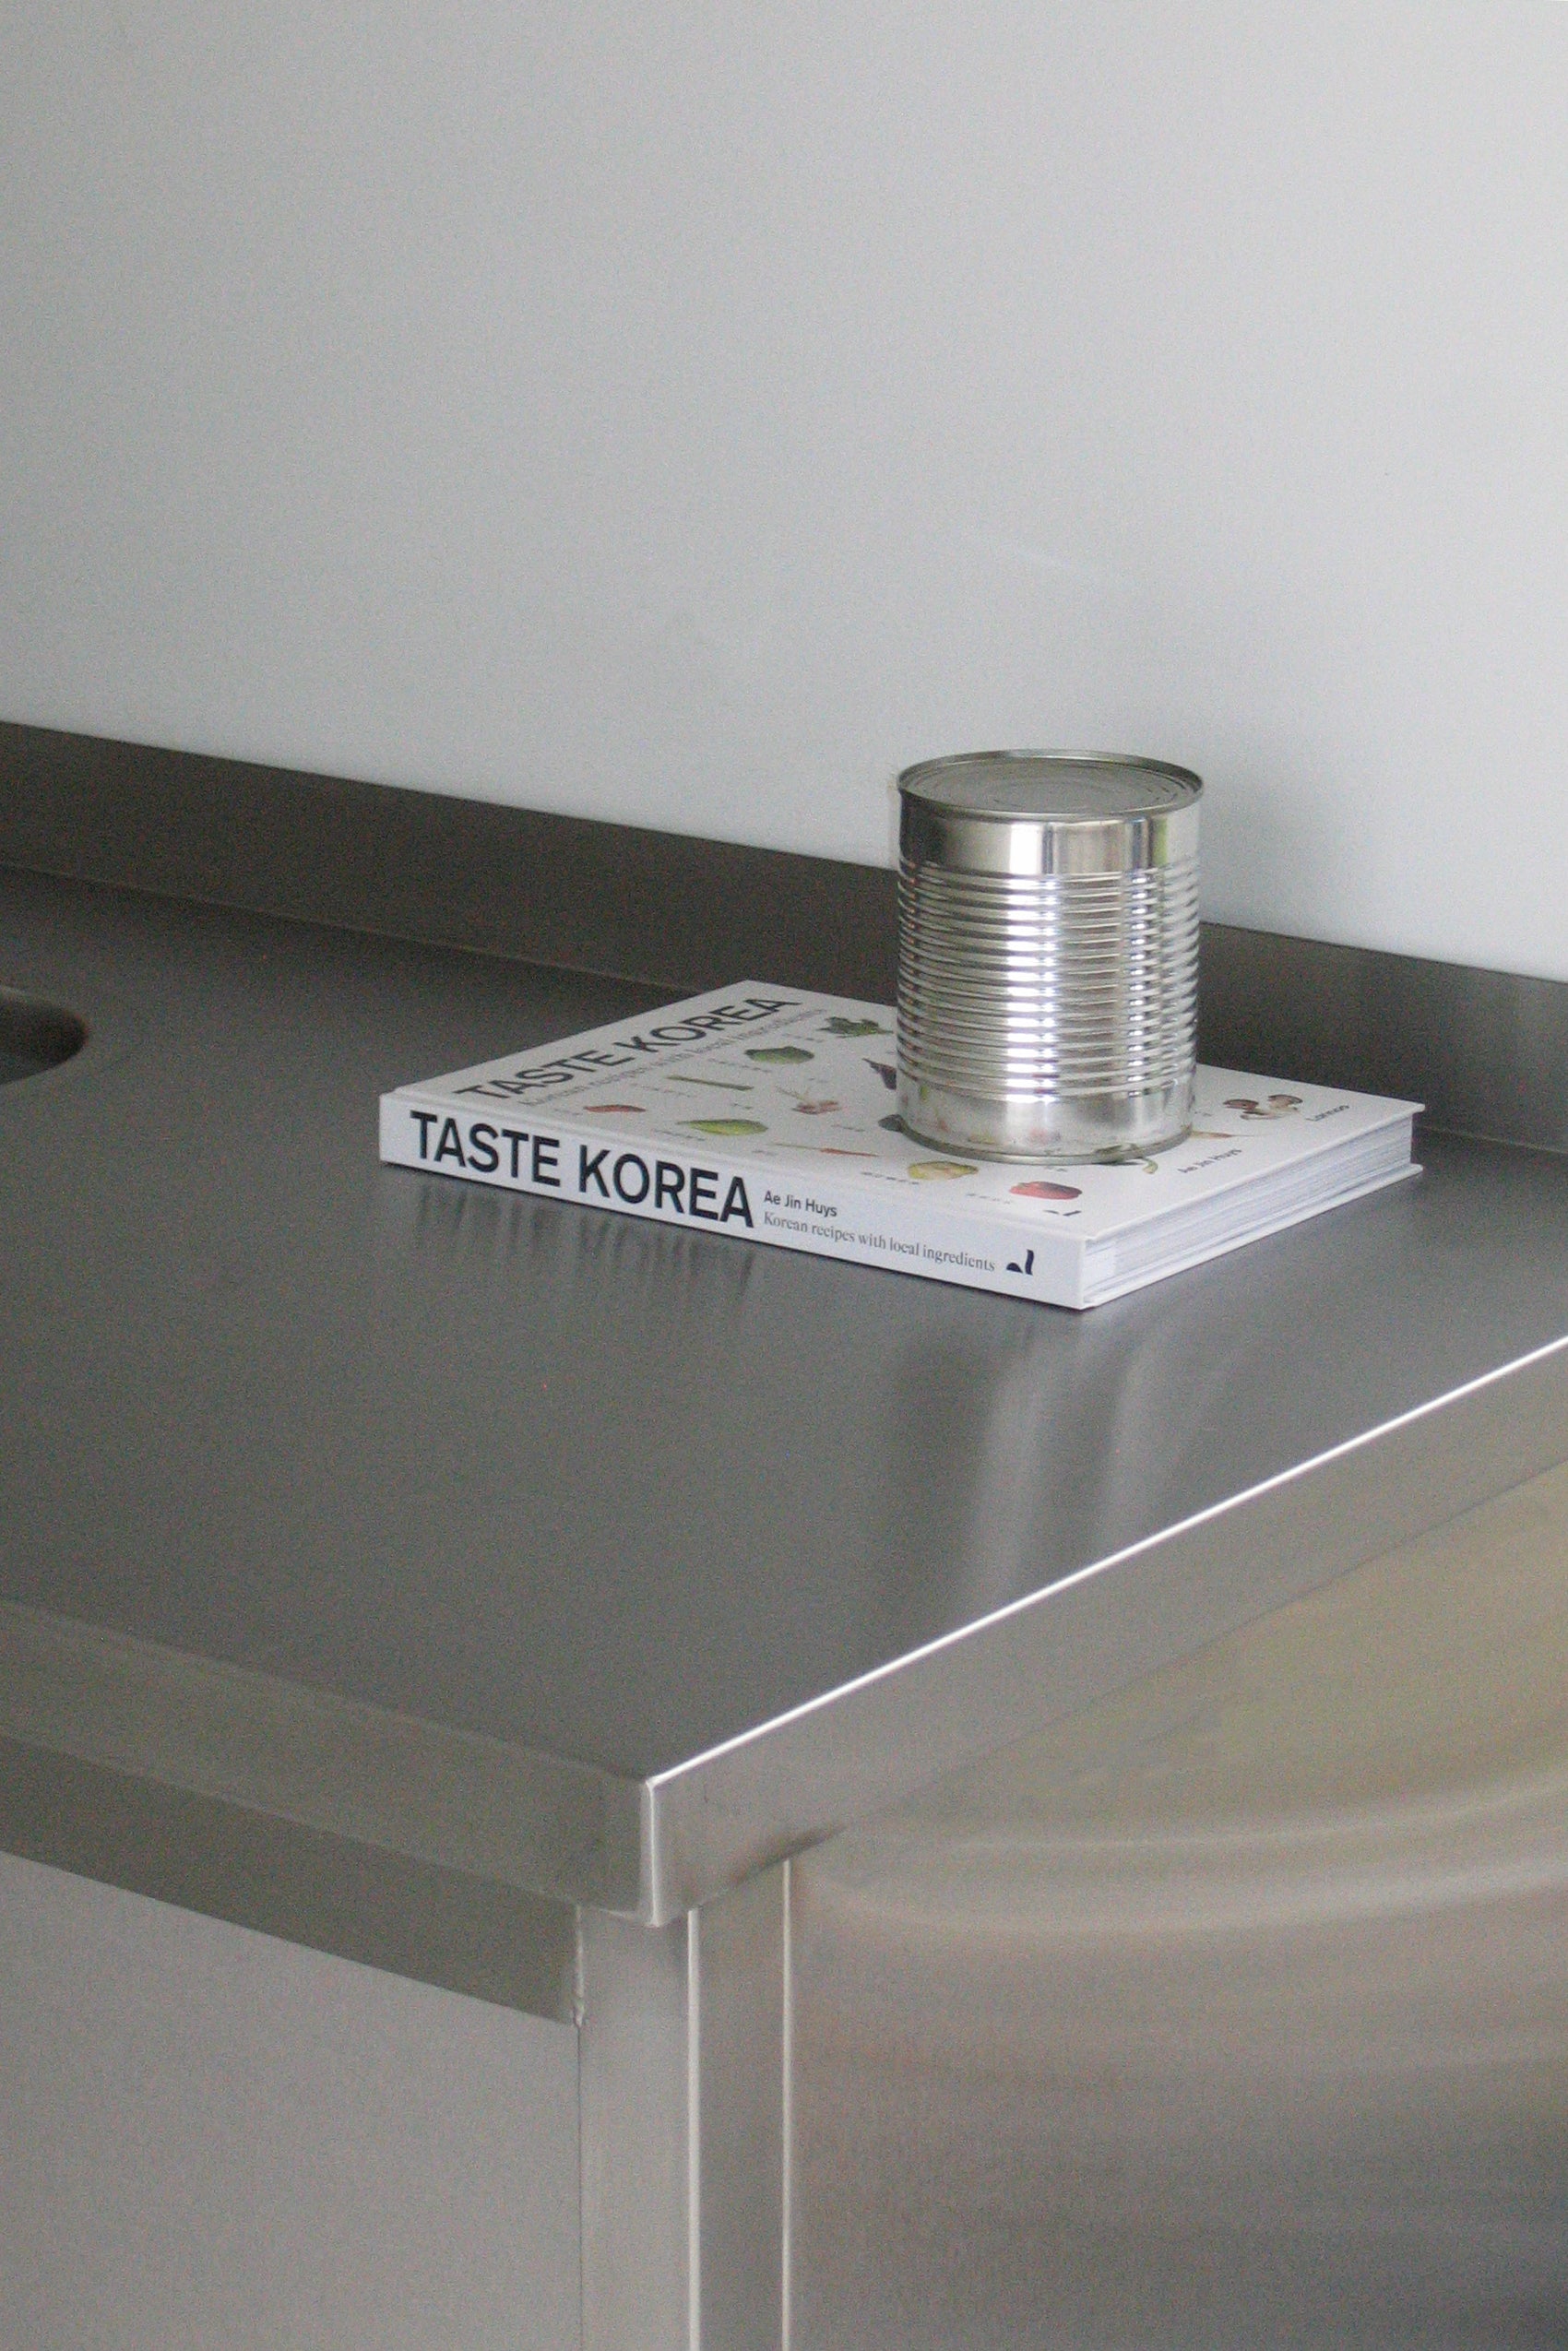 Taste Korea-Lannoo-[interior]-[design]-KIOSK48TH